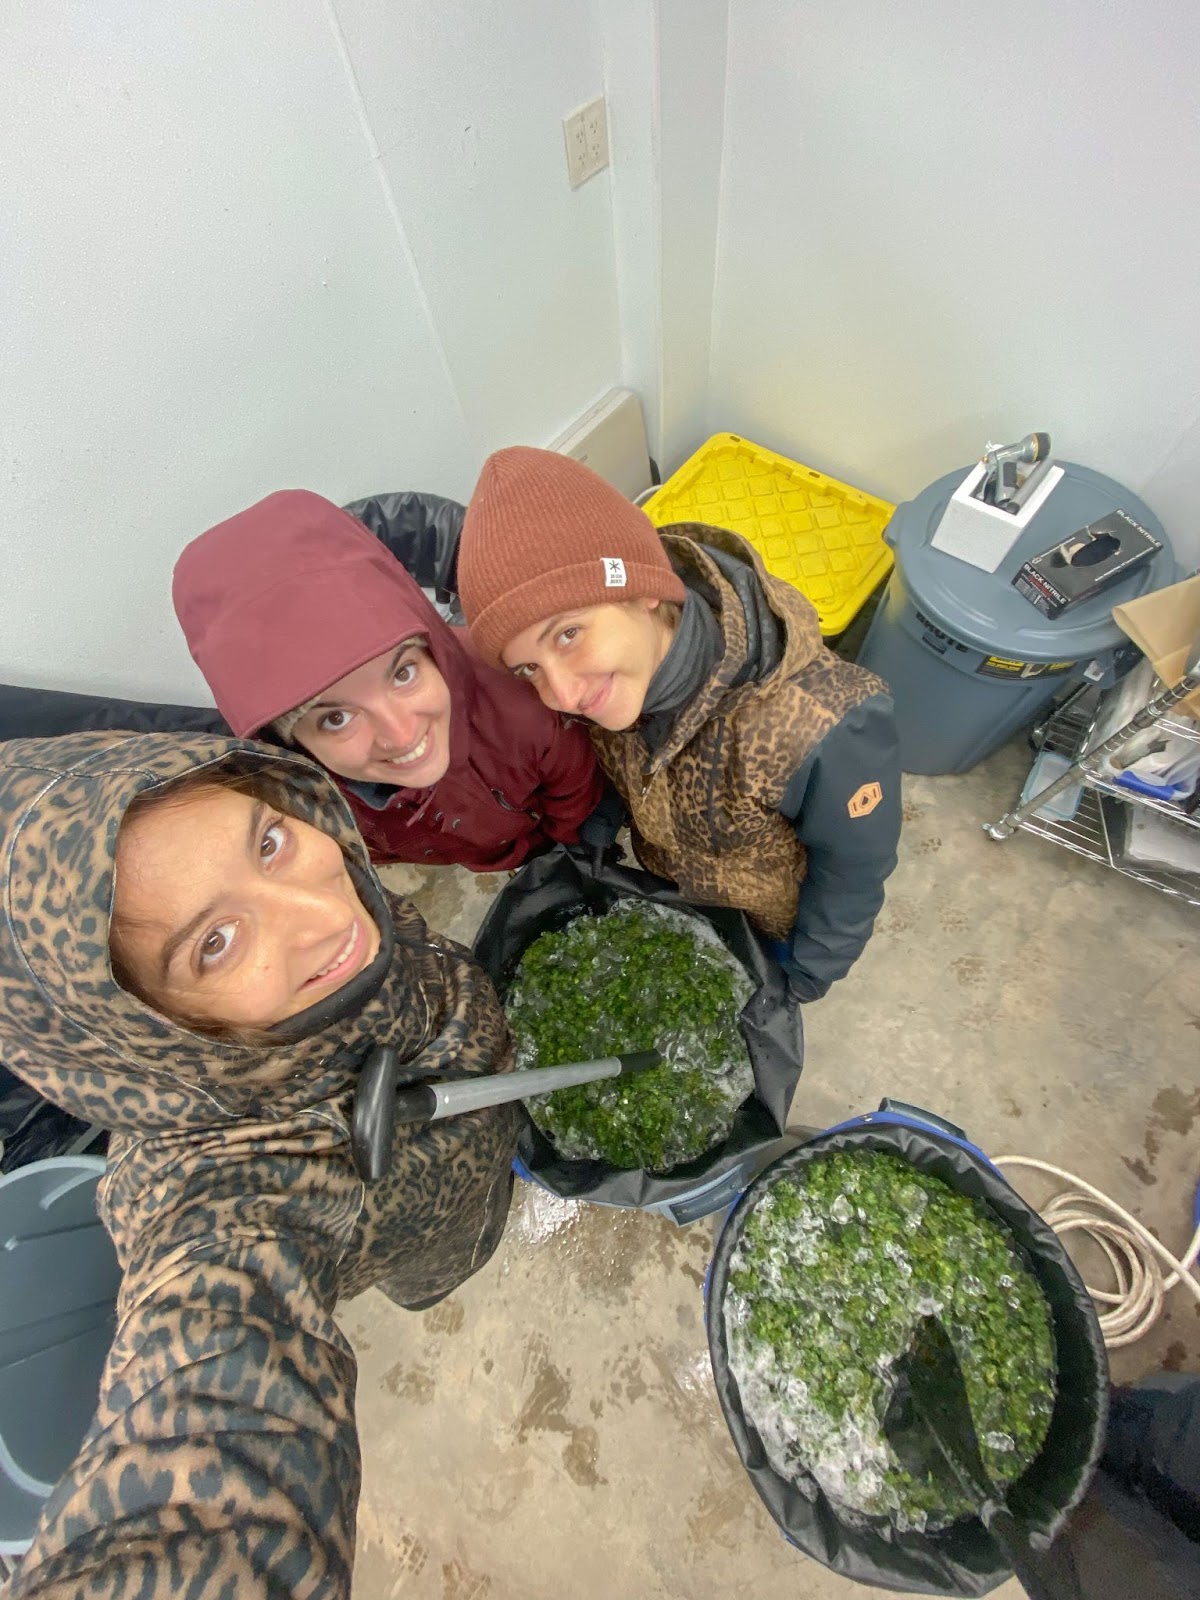 Foto colorida de três mulheres lavando haxixe em um cold room, com baldes contendo água, gelo e maconha